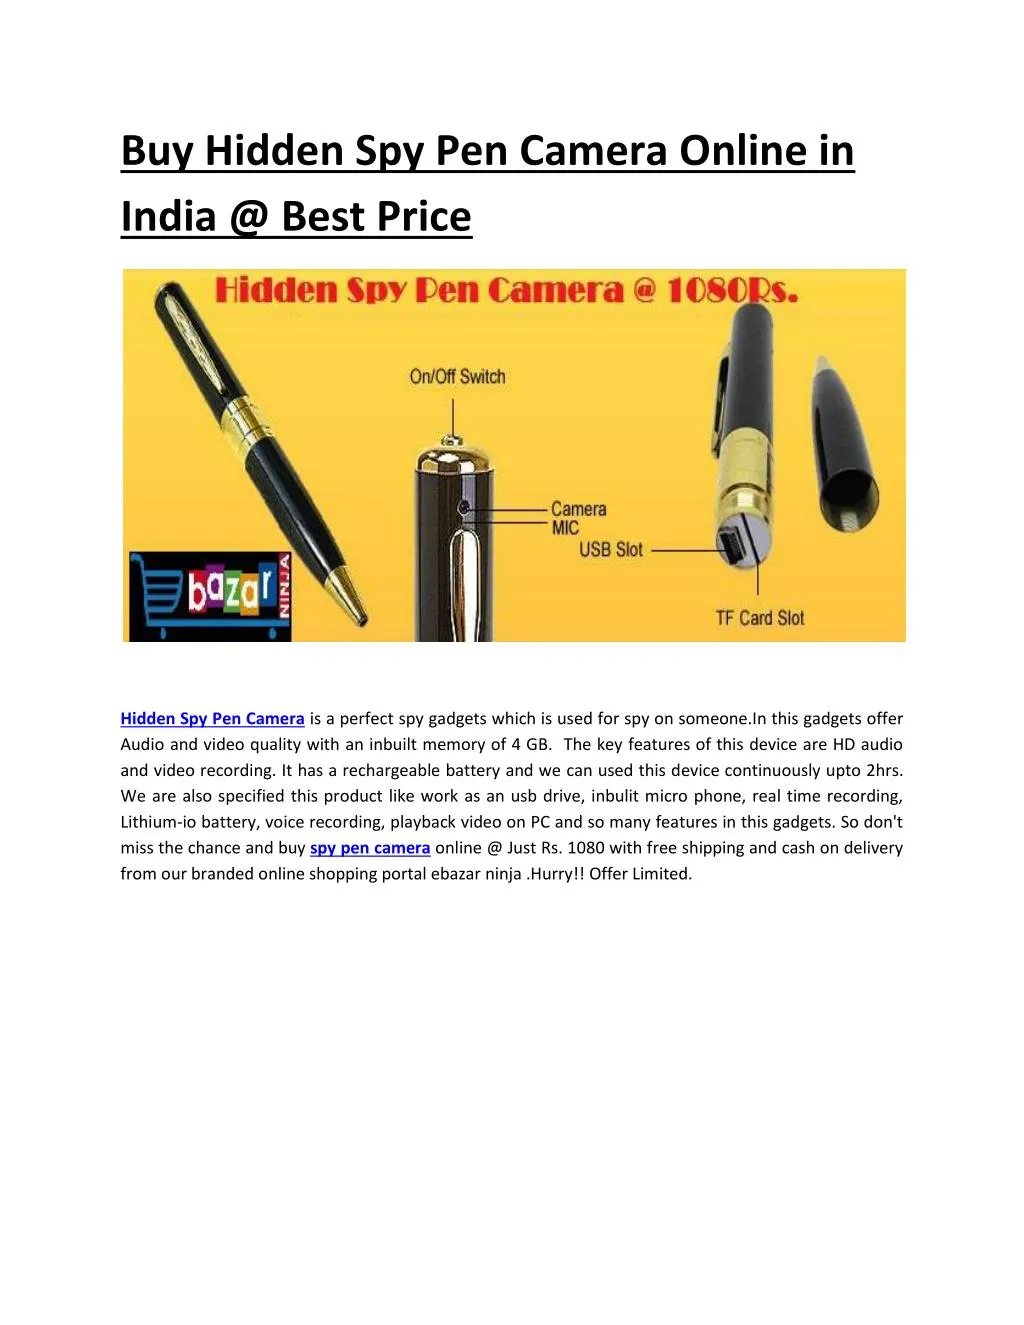 buy hidden spy pen camera online in india @ best